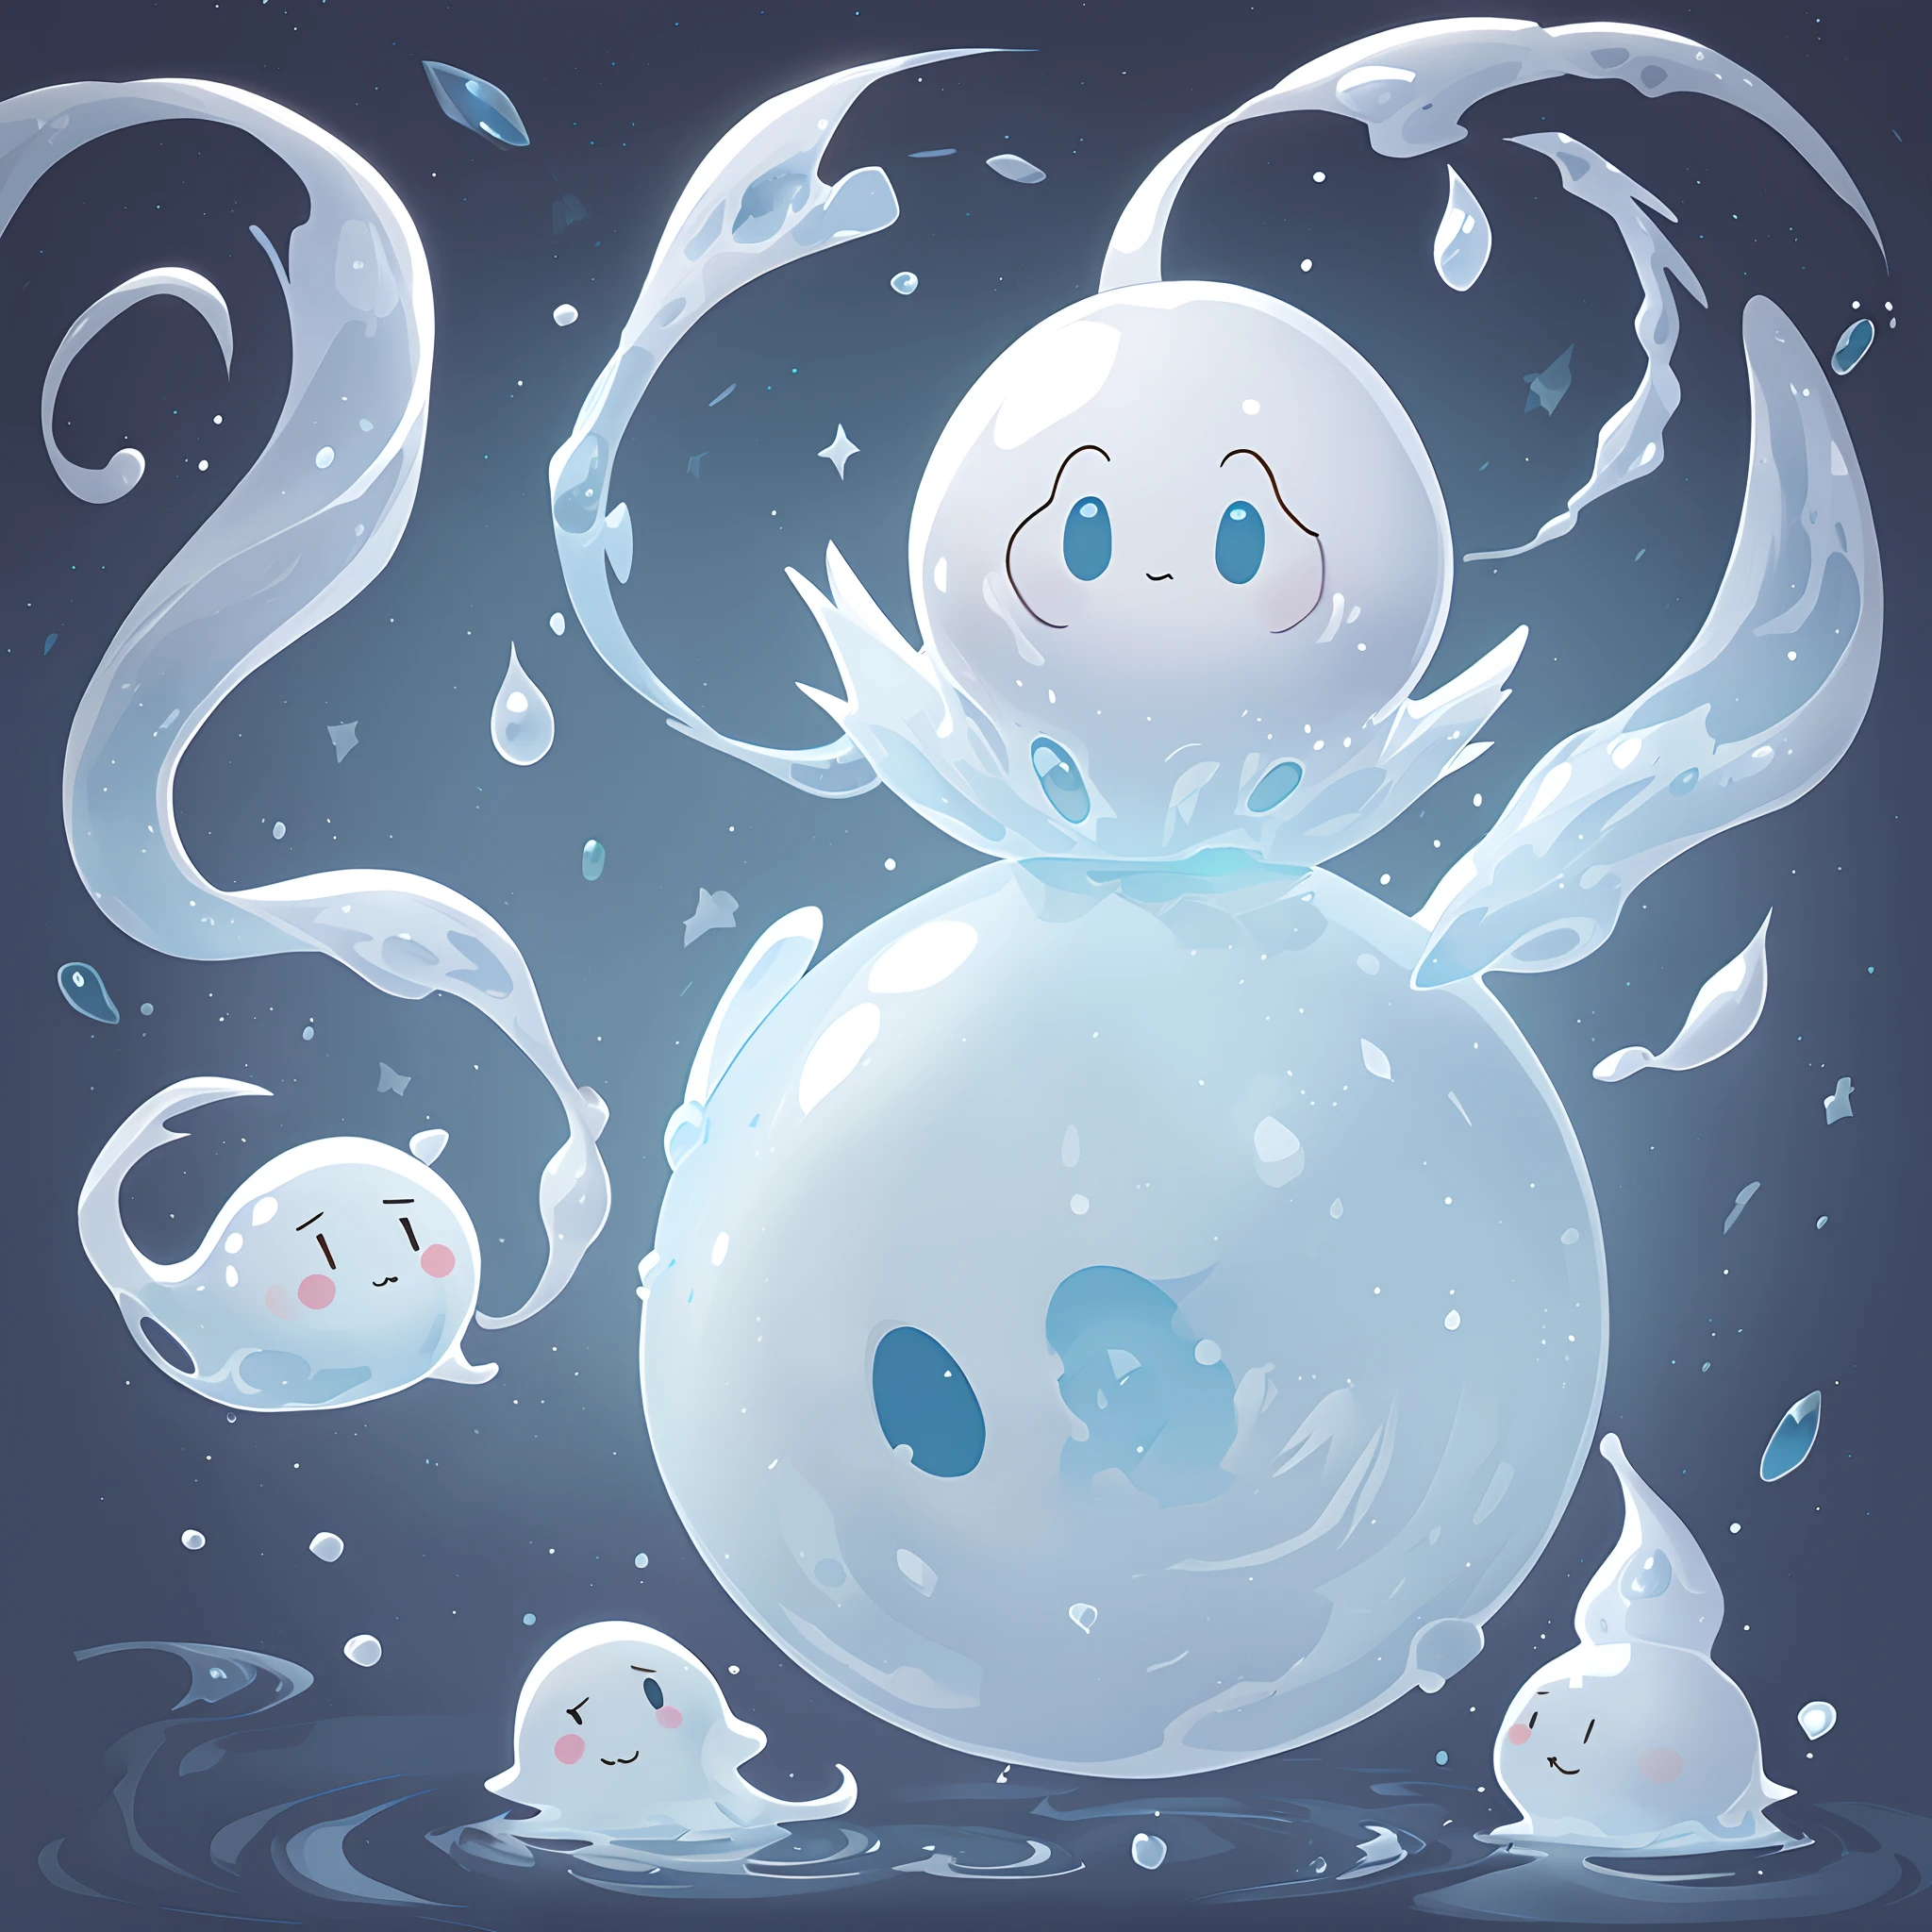 fantasma branco, bonitinho, flutuando, textura semelhante a lodo